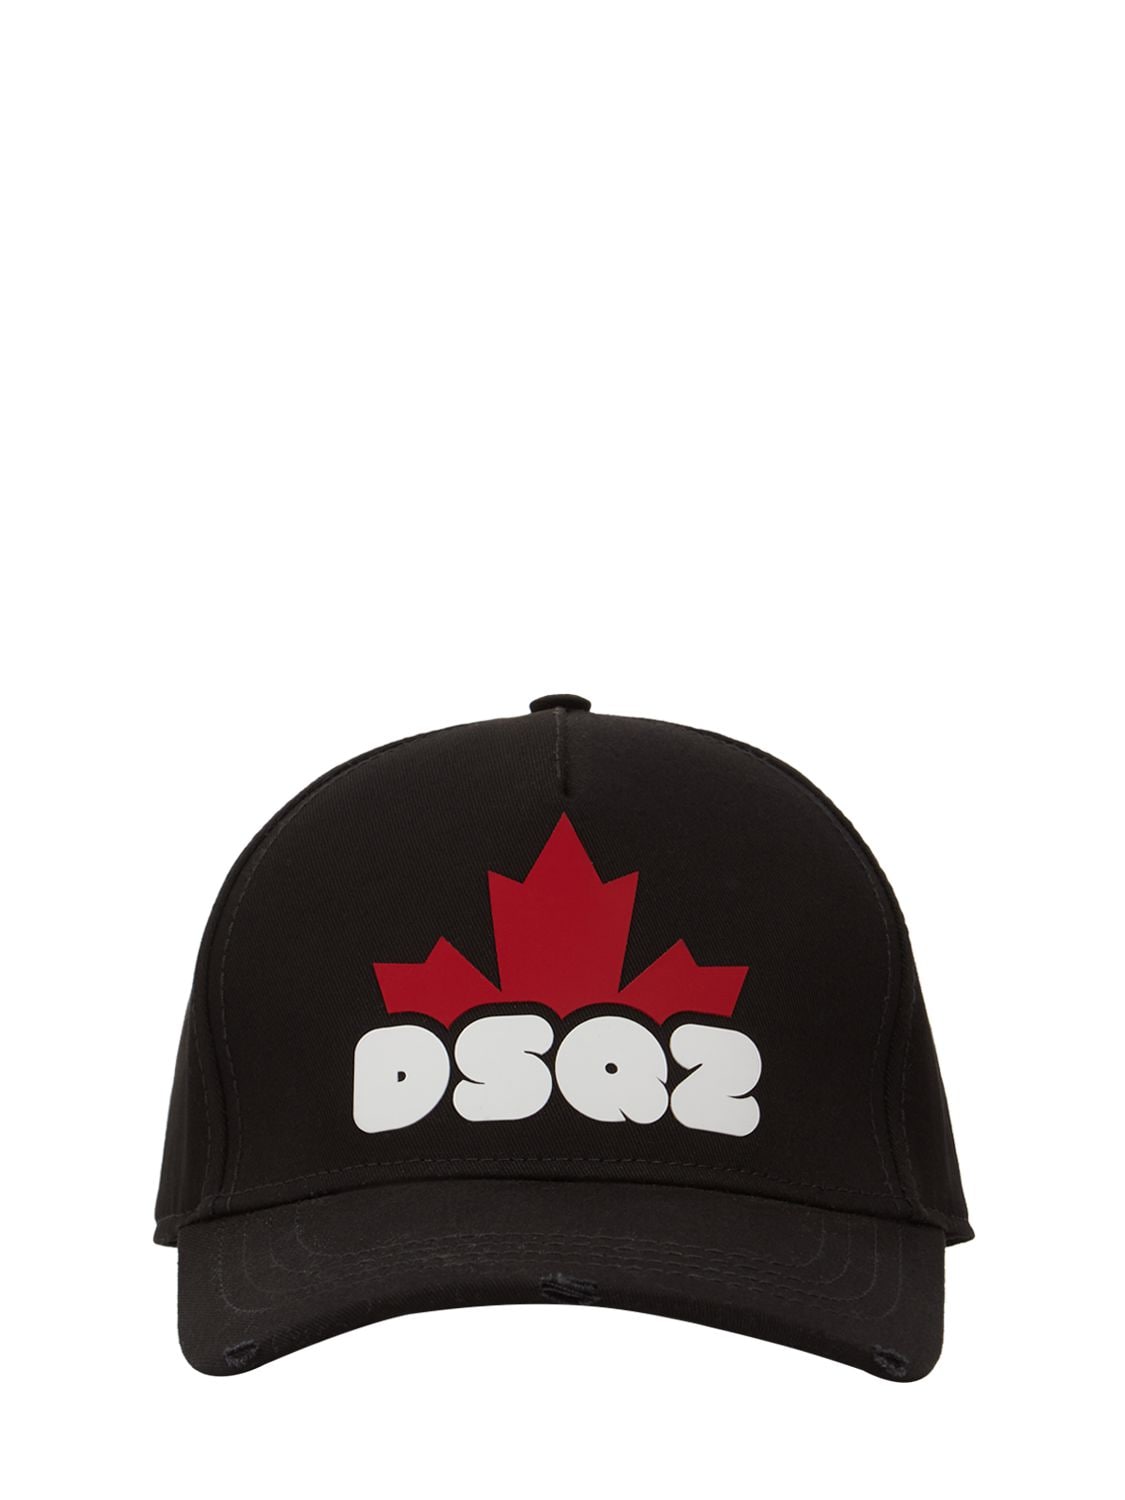 Dsq2 Logo Baseball Cap – MEN > ACCESSORIES > HATS